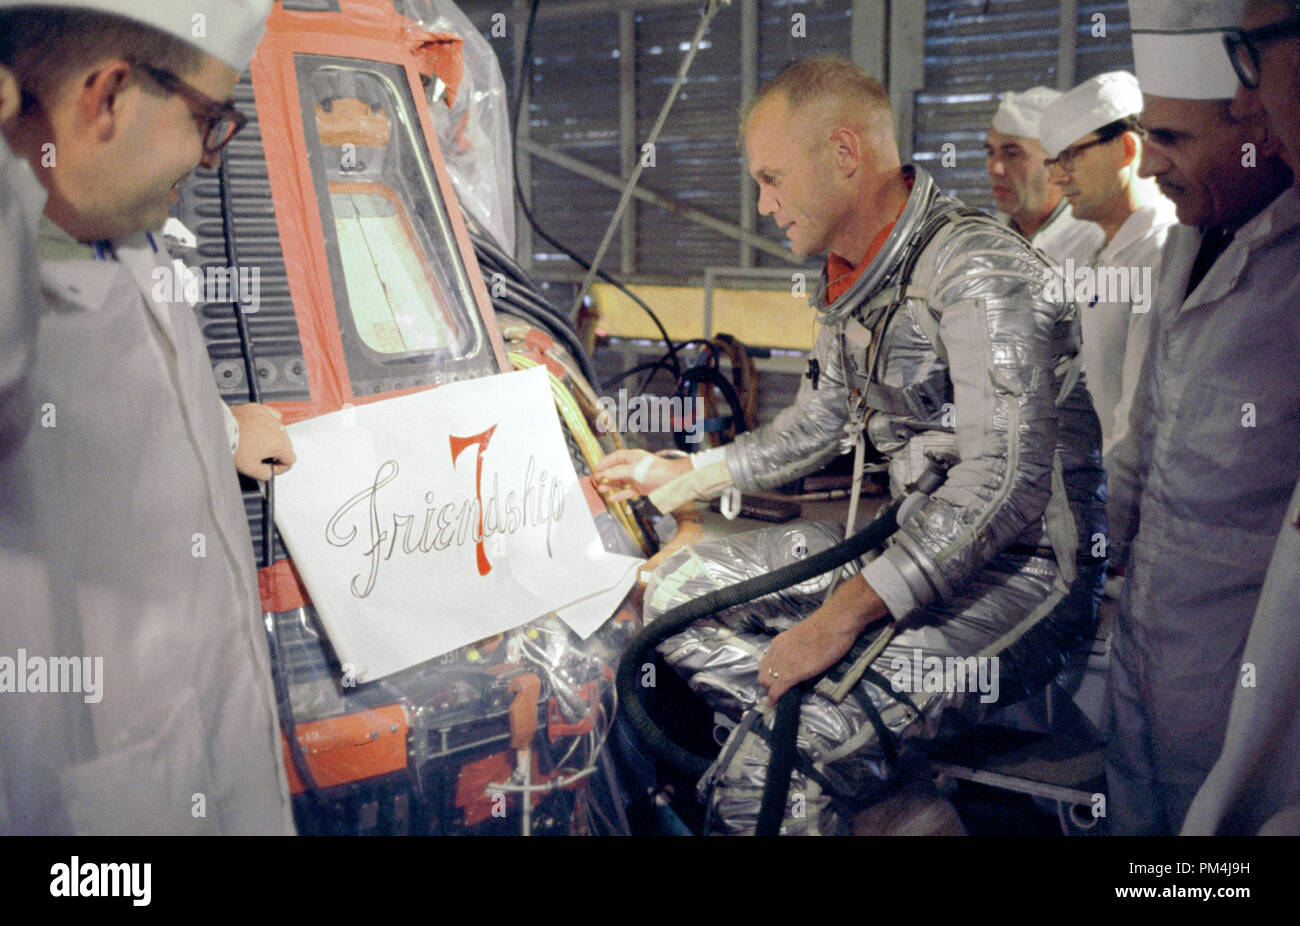 El astronauta John Glenn inspecciona las ilustraciones que serán pintadas en el exterior de su nave espacial Mercury, que él apodó amistad 7. El 20 de febrero de 1962, Glenn levantado en el espacio a bordo de su Mercury Atlas (cohete MA-6) para convertirse en el primer americano en órbita alrededor de la tierra. Después orbitando alrededor de la Tierra 3 veces, Amistad 7 aterrizó en el Océano Atlántico, al este de la Isla Gran Turca en las Bahamas. Glenn y su cápsula fueron recuperados por el destructor de la Marina Noa, 21 minutos después de splashdown archivo de referencia # 1003 623tha Foto de stock